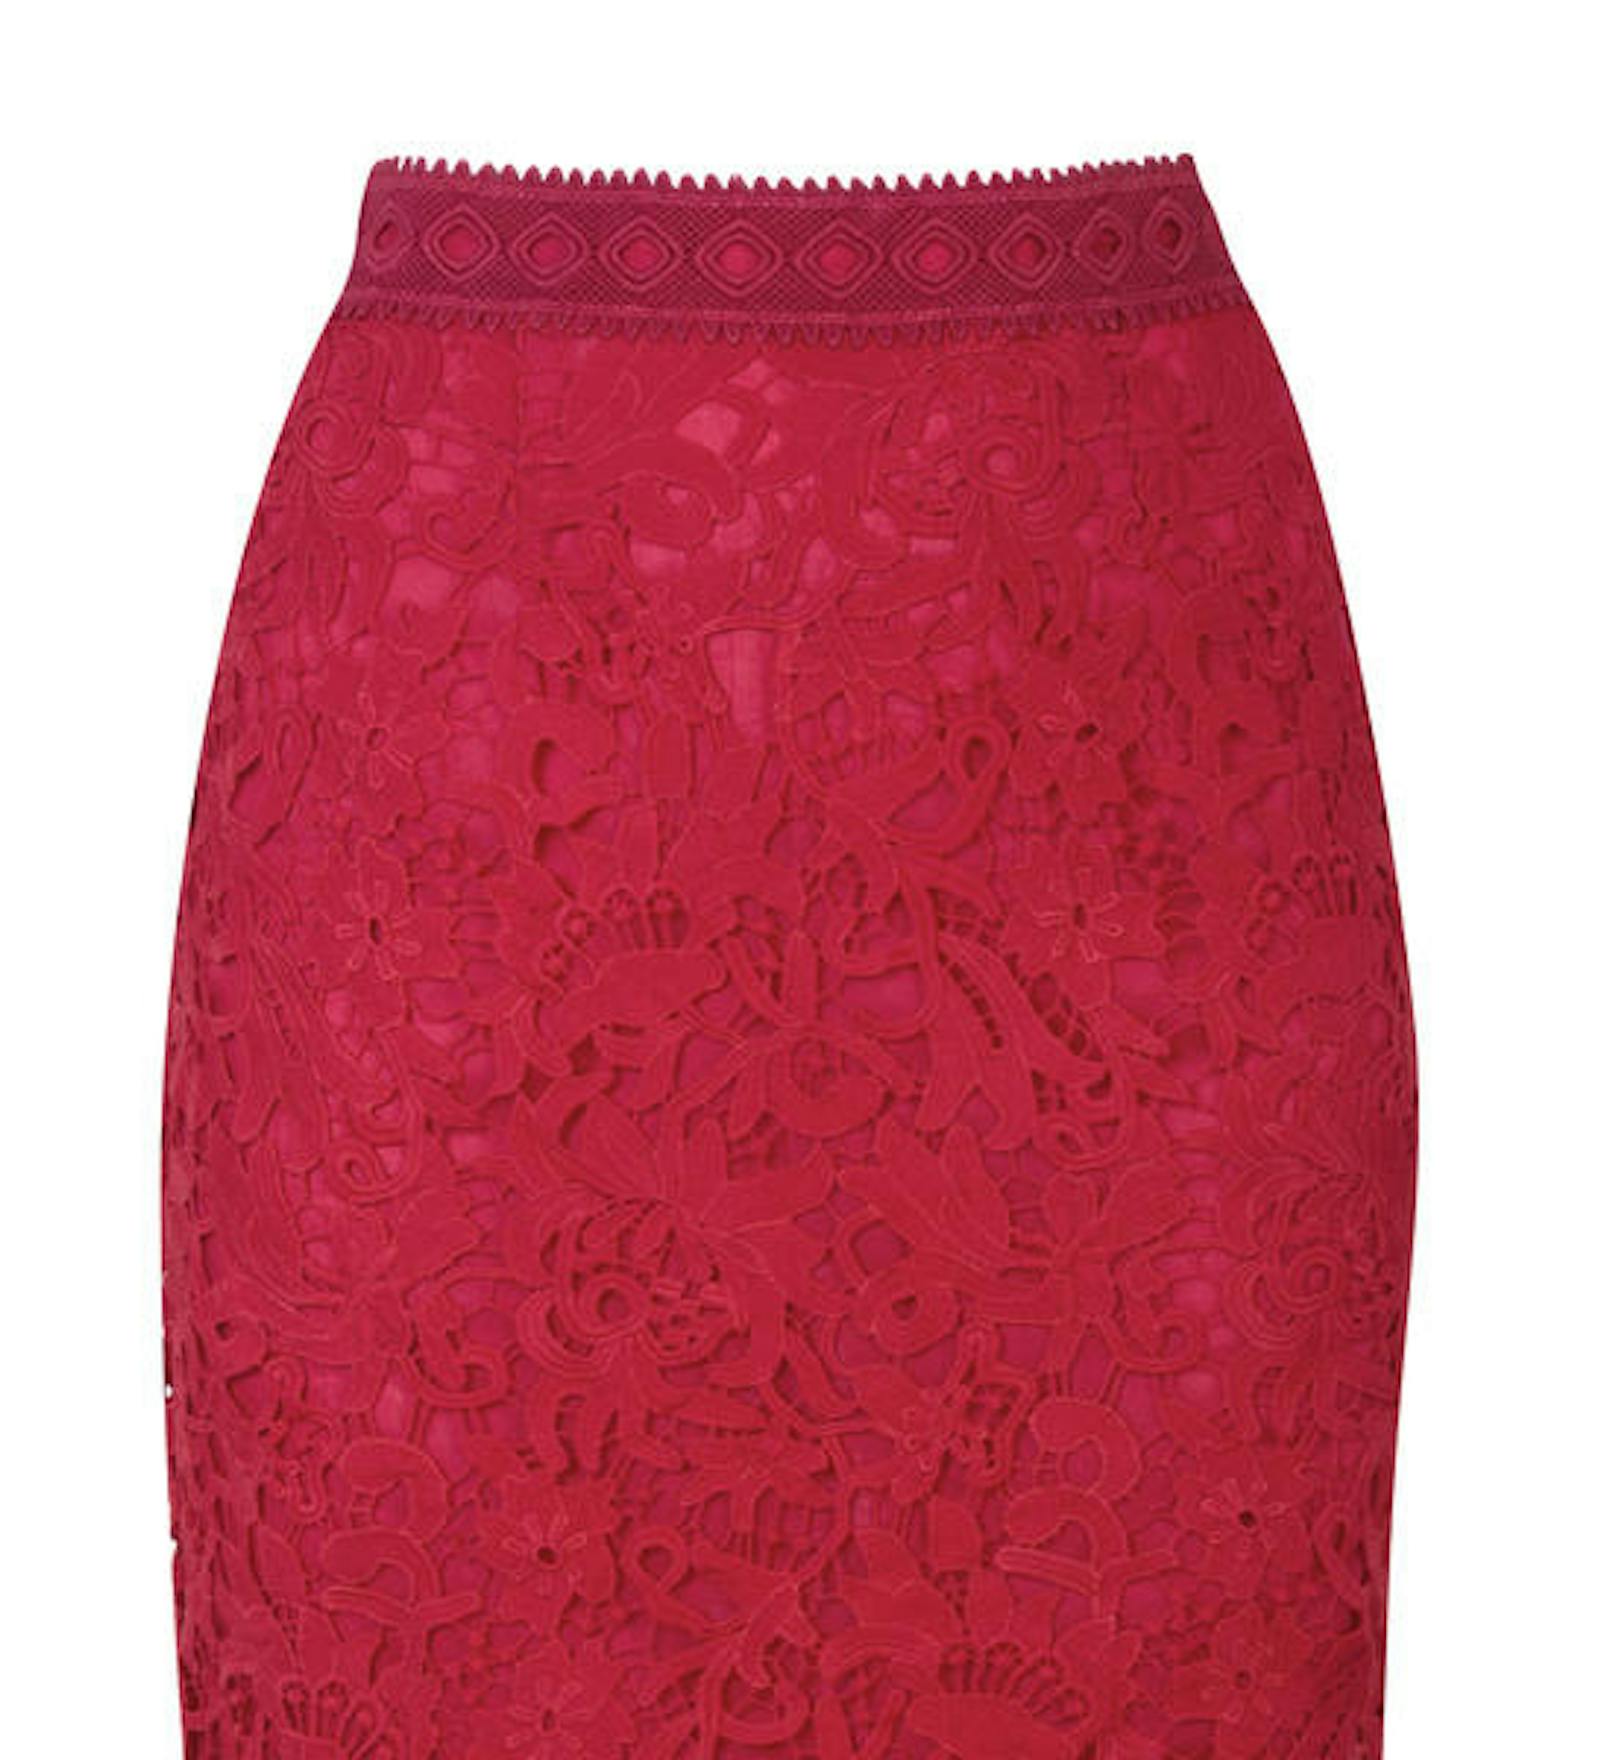 Markenzeichen Meghan Markle: Der Pencil Skirt. Hier in einer wunderschönen Spitzen-Ausführung in Signalrot.